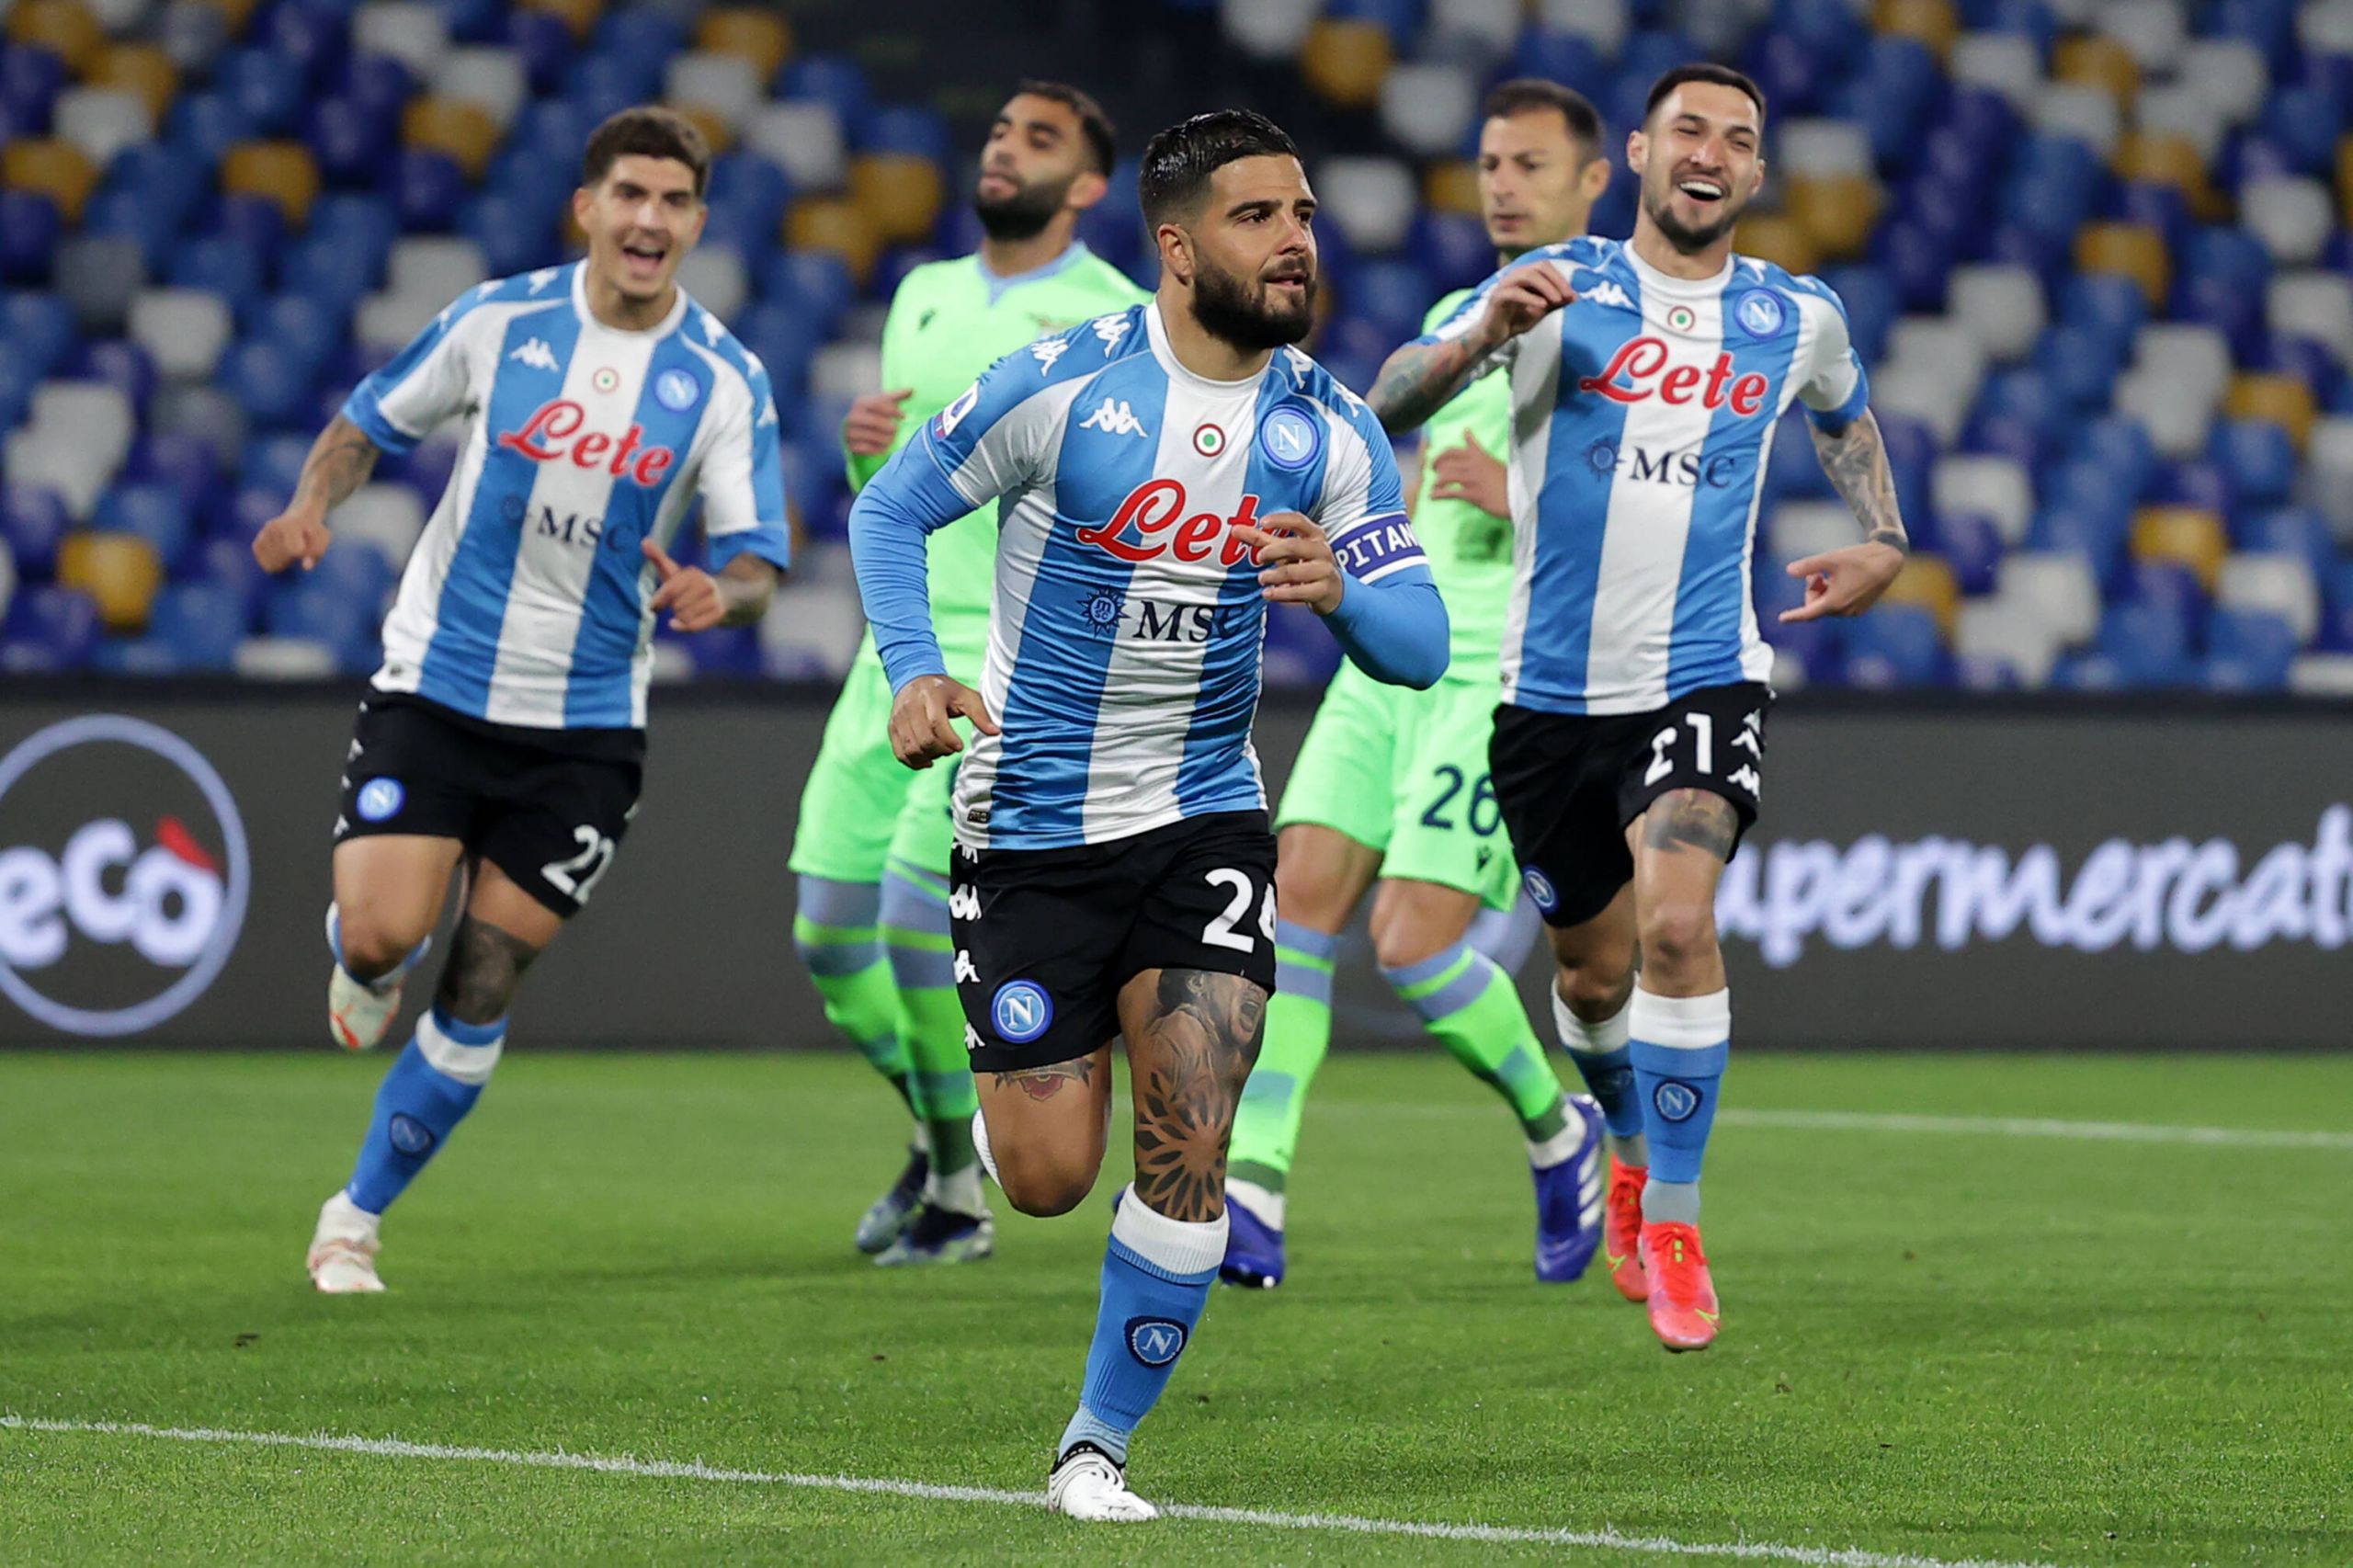 Video Lorenzo Insigne Stuns Lazio With A World Class Goal To Give Napoli A 3 0 Lead The Laziali